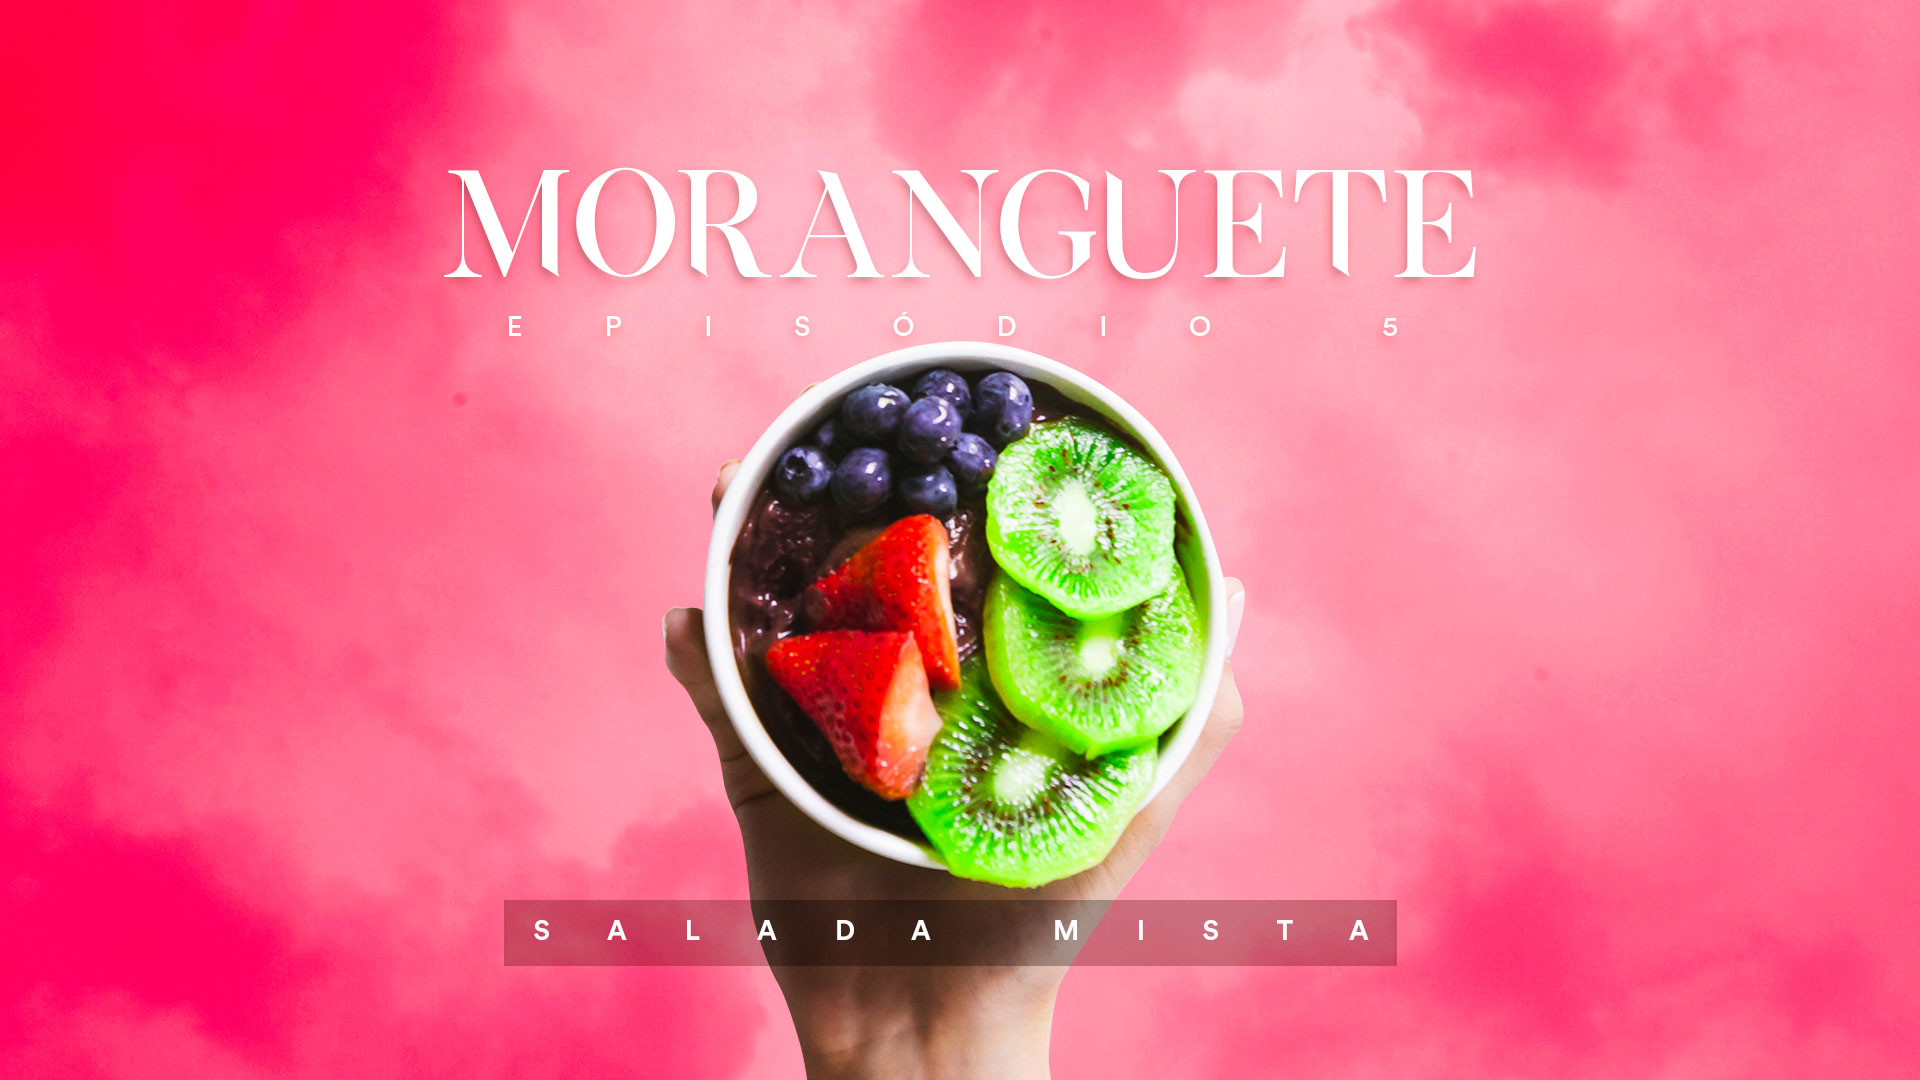 Moranguete – Salada mista (Episódio 05)